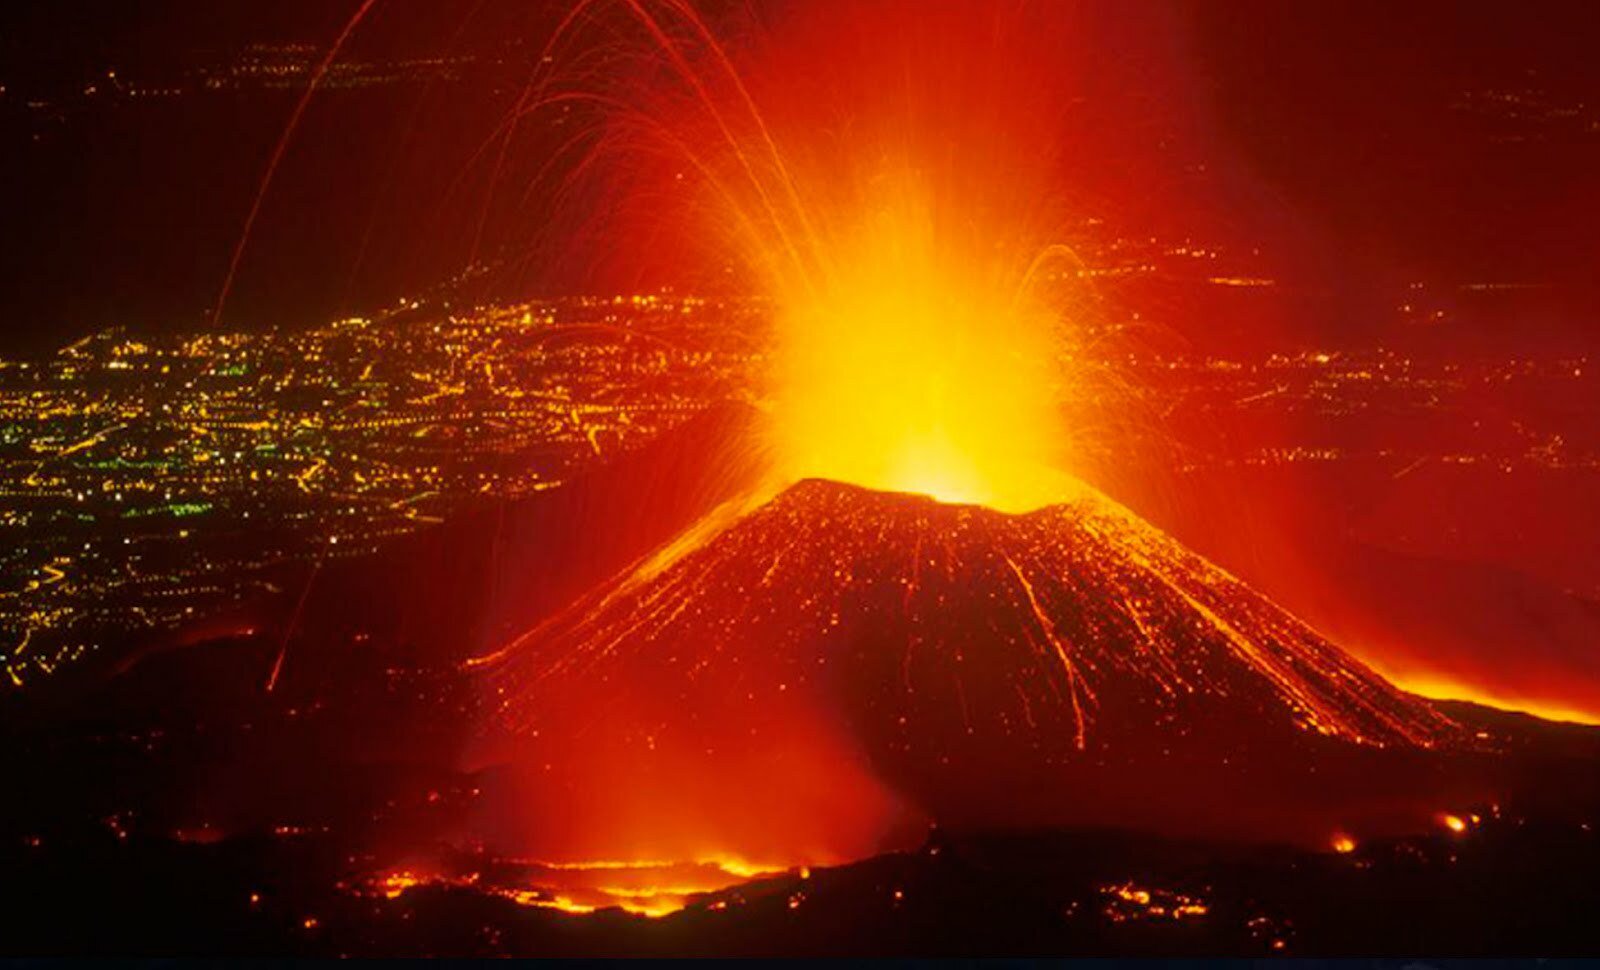 Mơ thấy núi lửa: Cảm xúc bị đè nén, nên thử vận may với số nào?